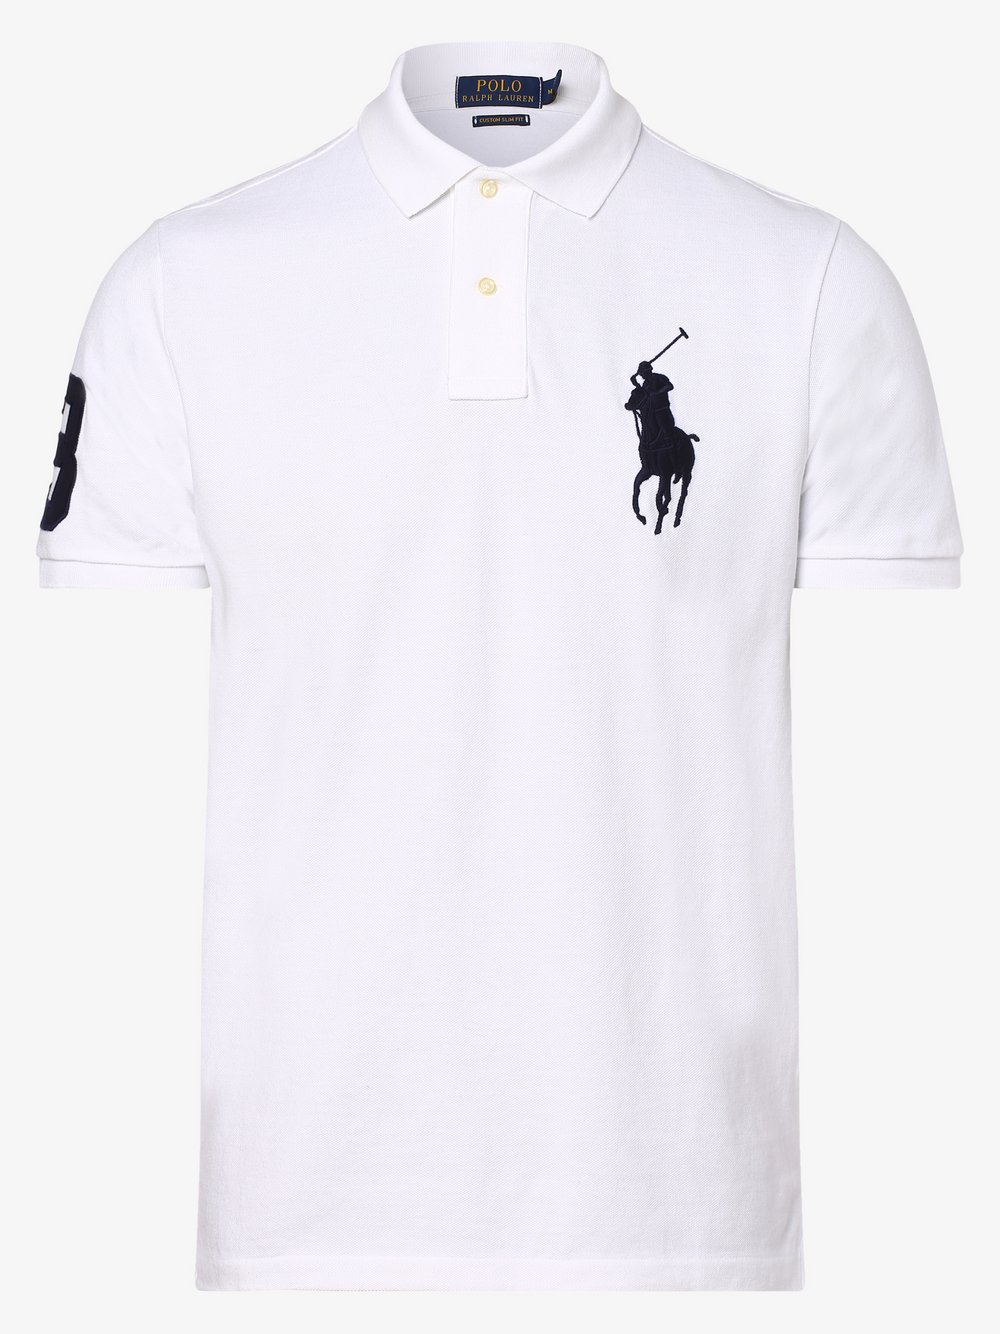 Herren Bekleidung Shirts Poloshirts INT L Polo Ralph Lauren Herren Poloshirt Gr 